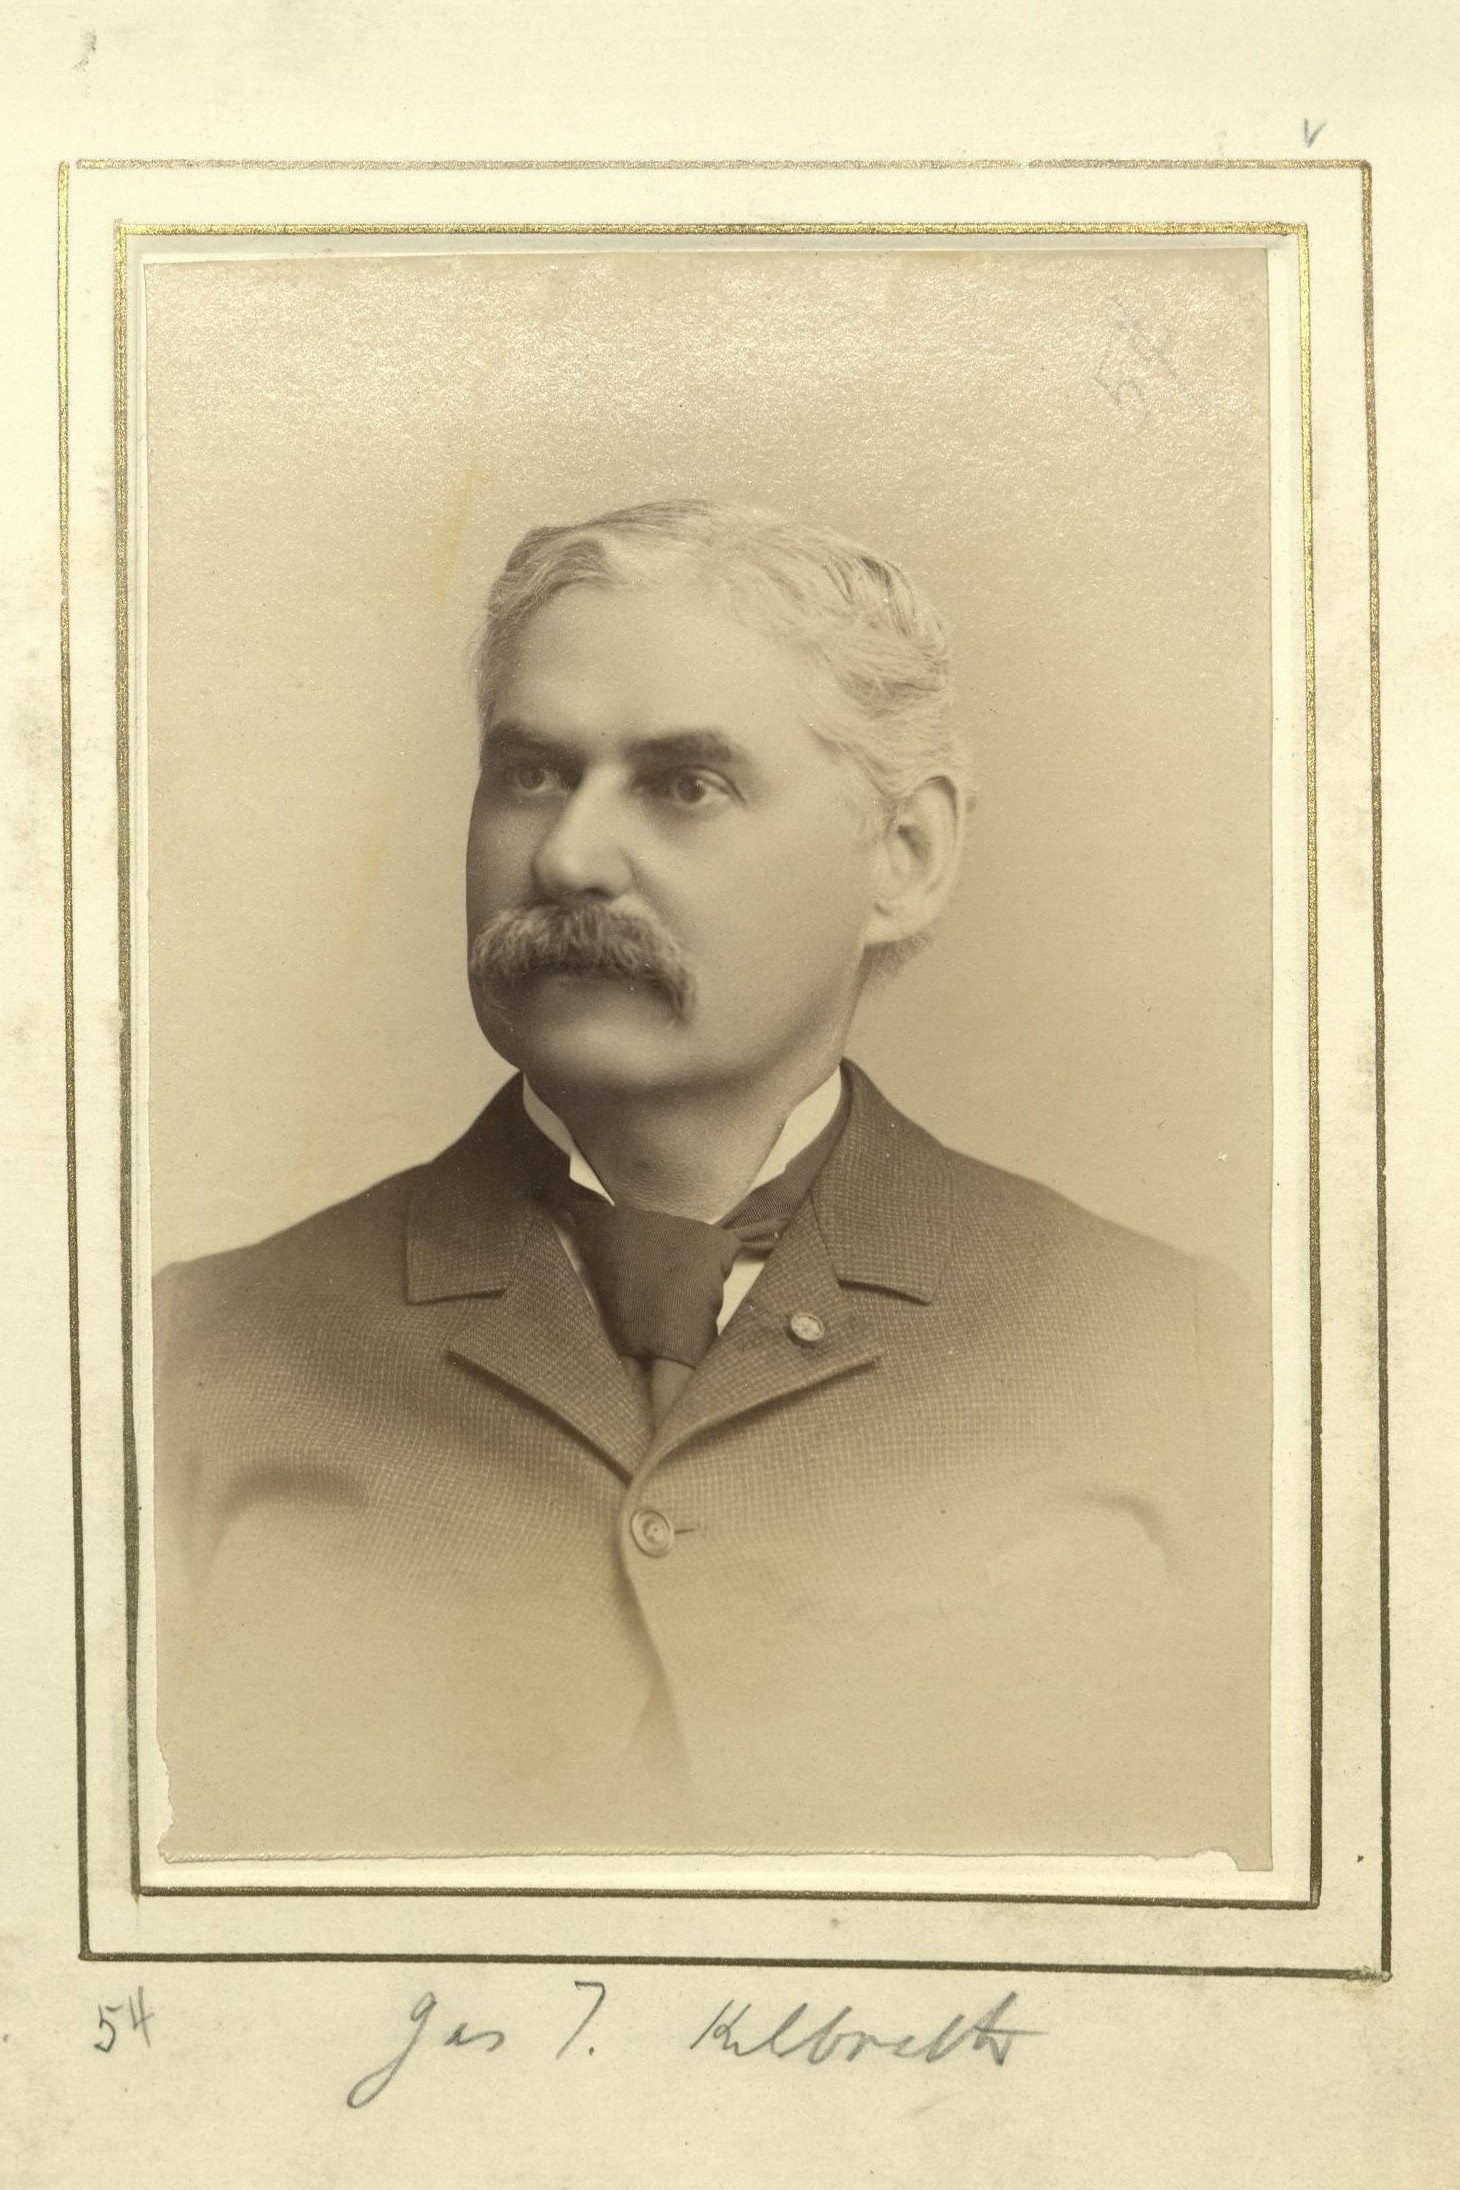 Member portrait of James T. Kilbreth